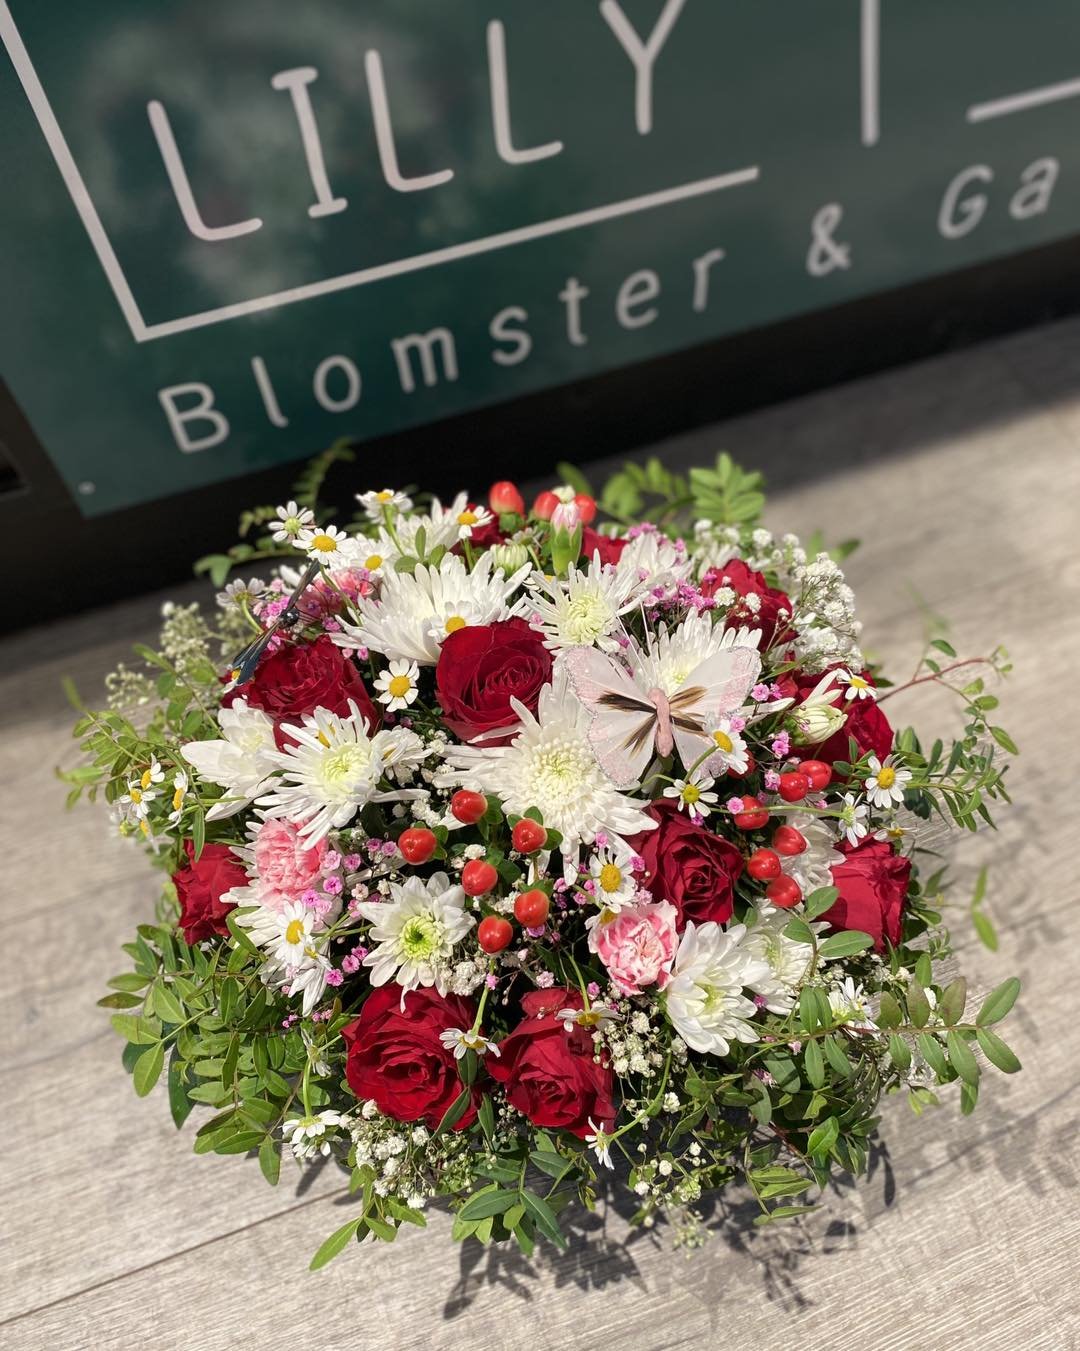 Gratulerer med dagen til alle konfirmantene !! 🇳🇴💖
- - 
Vi hjelper deg gjerne med blomster til alle anledninger 😊🫶🏻

🌸 Vi tar imot bestilling p&aring; Facebook,
🌐 : www.lillyblomster.no
💌 : post@lillyblomster.no 
📞 : 91 81 41 51
- Vi gj&osl